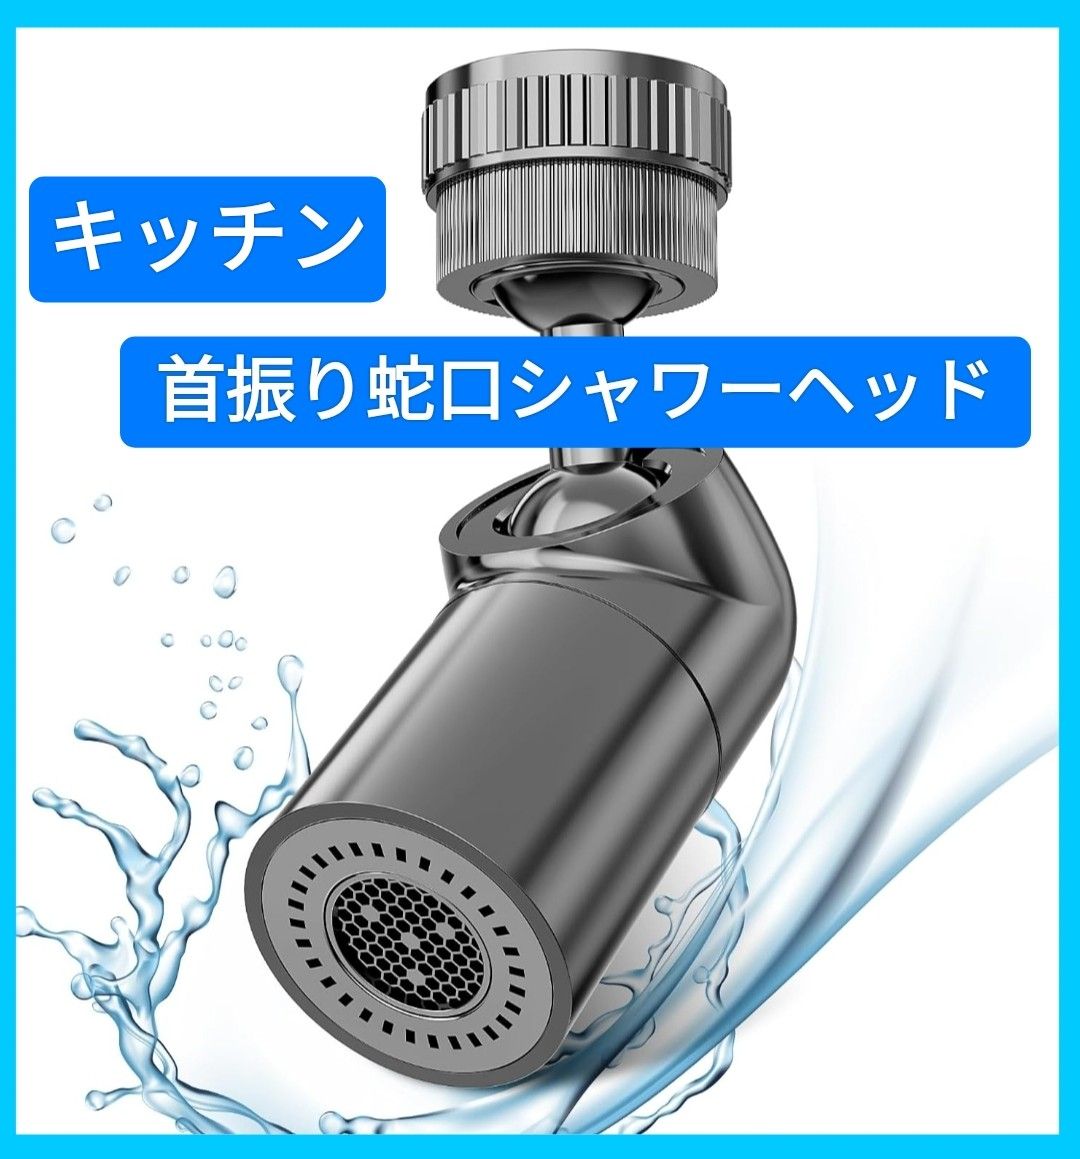 首振り 蛇口シャワー 首振りキッチンシャワーヘッド 蛇口 次世代節水技術 水道用 節水 泡モード